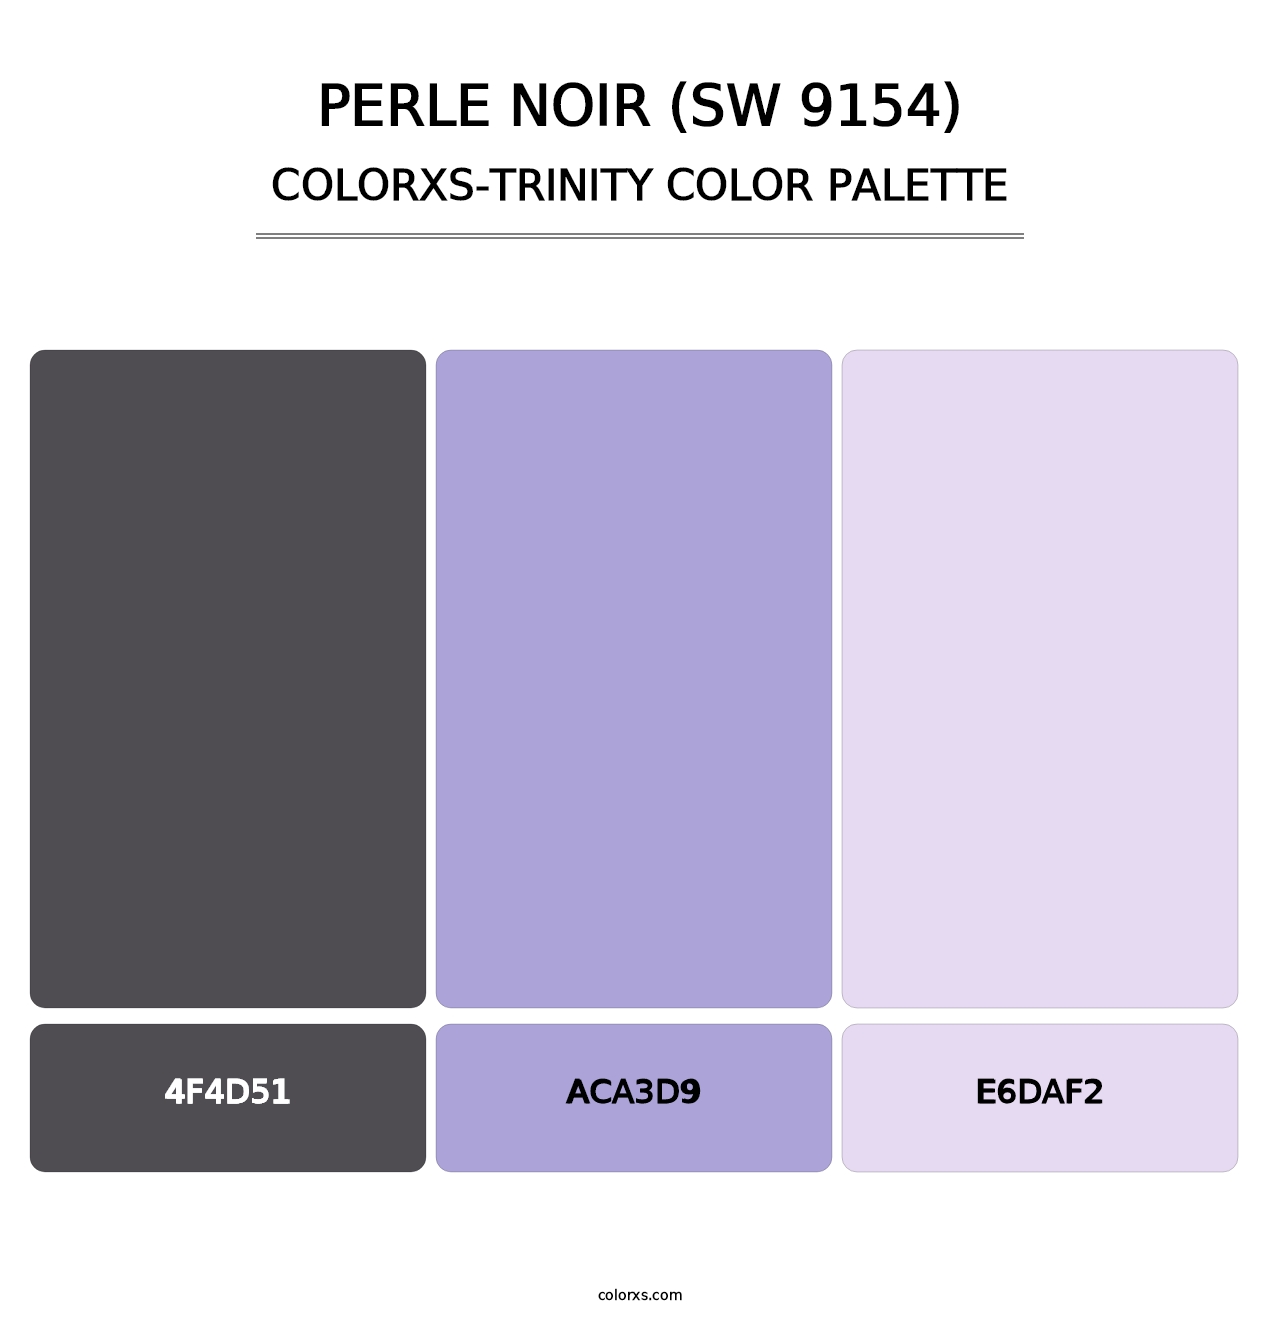 Perle Noir (SW 9154) - Colorxs Trinity Palette